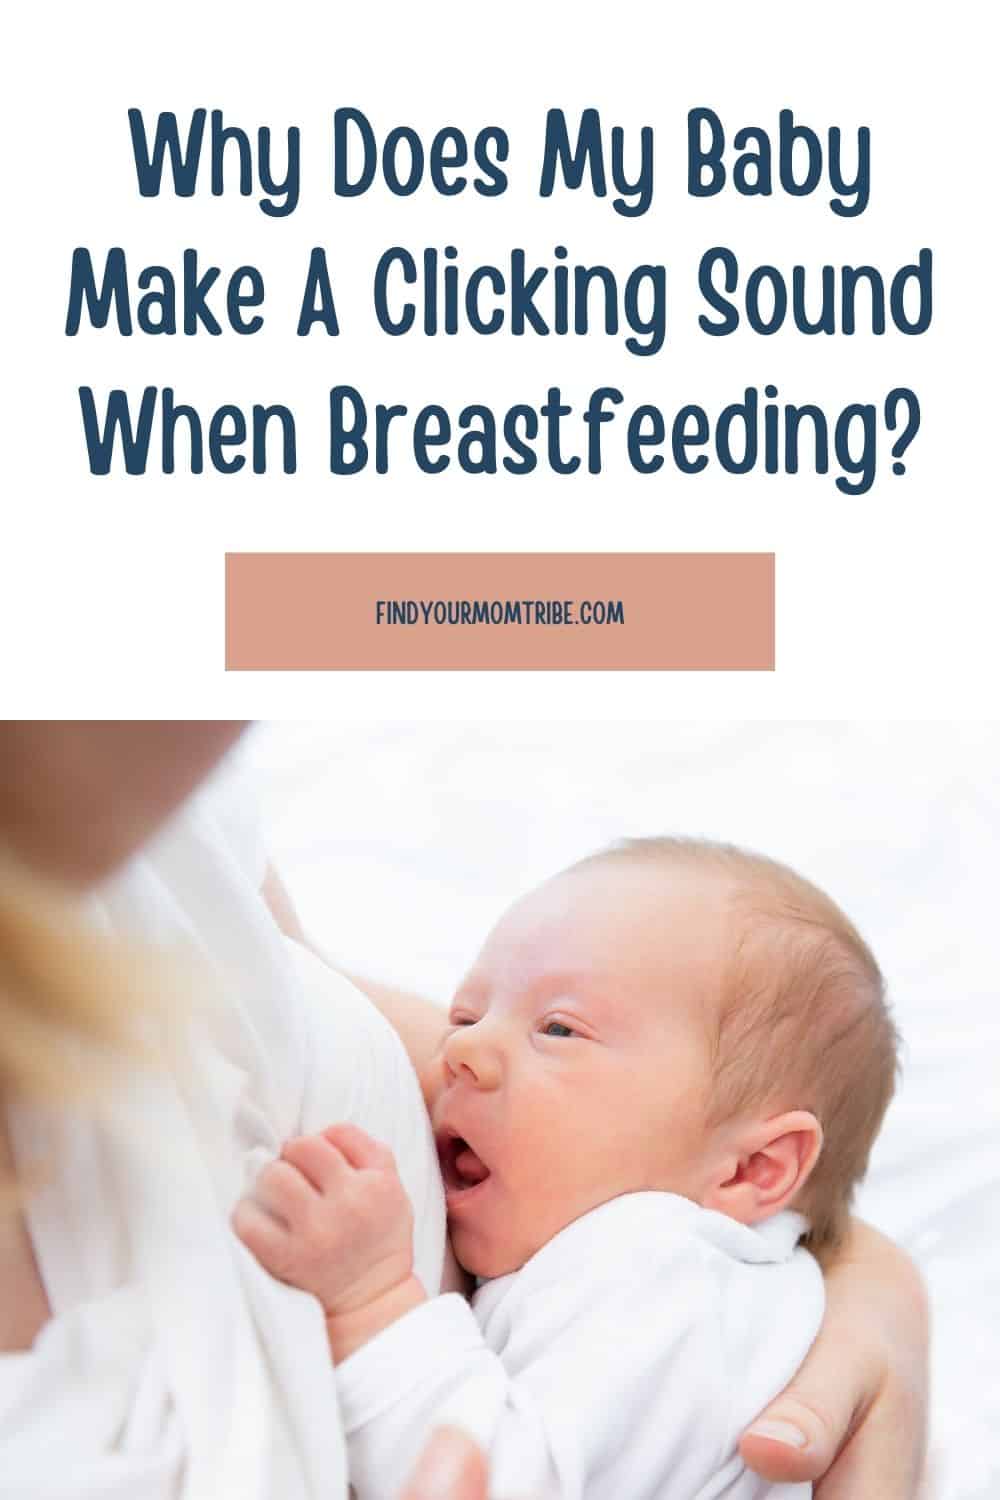  Pinterest clicking sound when breastfeeding